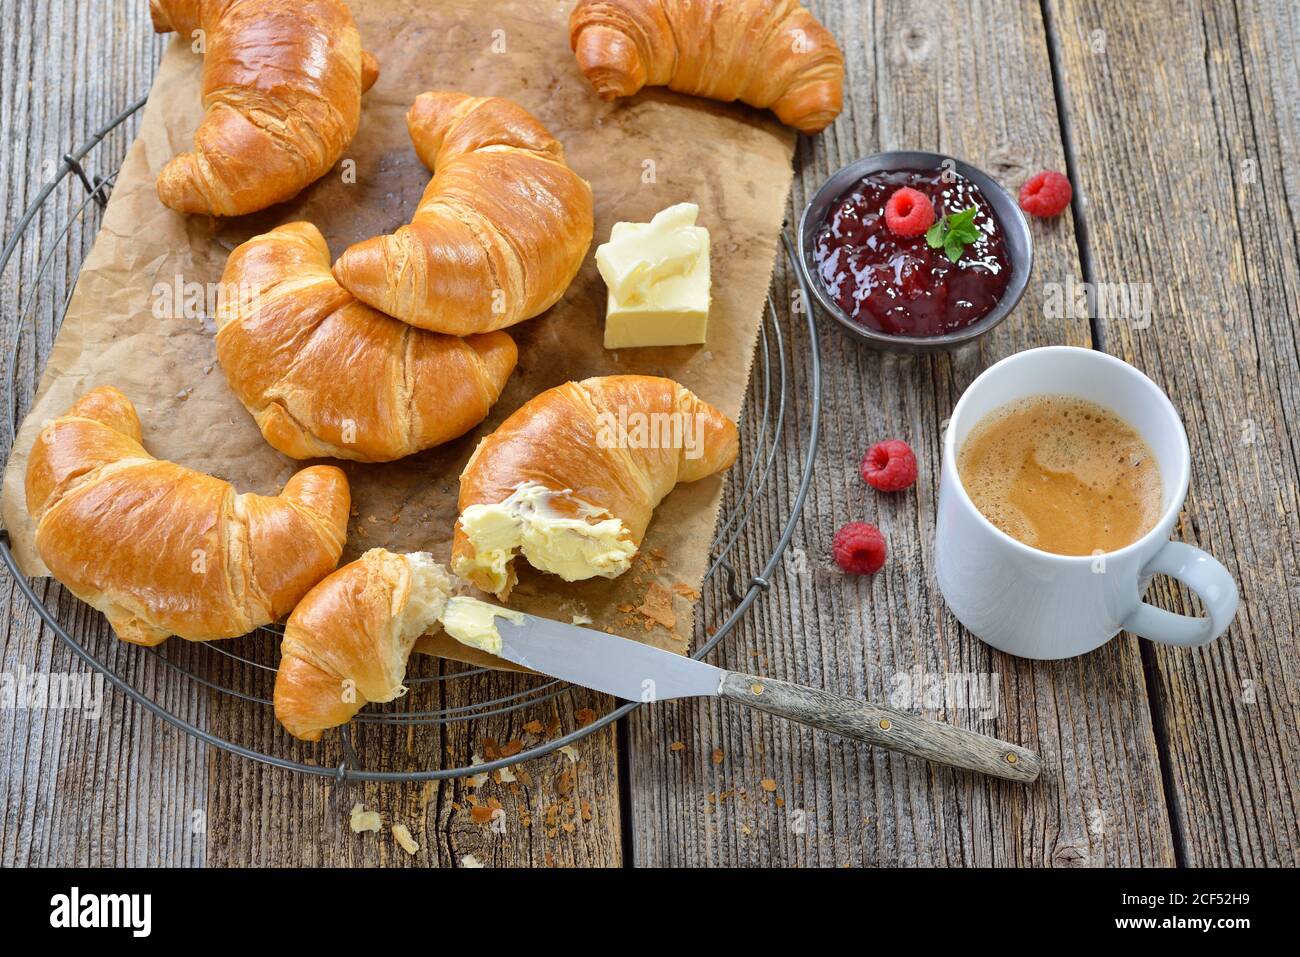 Frühstück mit frisch gebackenen Croissants auf einem Kühlregal, serviert mit Butter, Marmelade und einer Tasse Kaffee-Creme Stockfoto